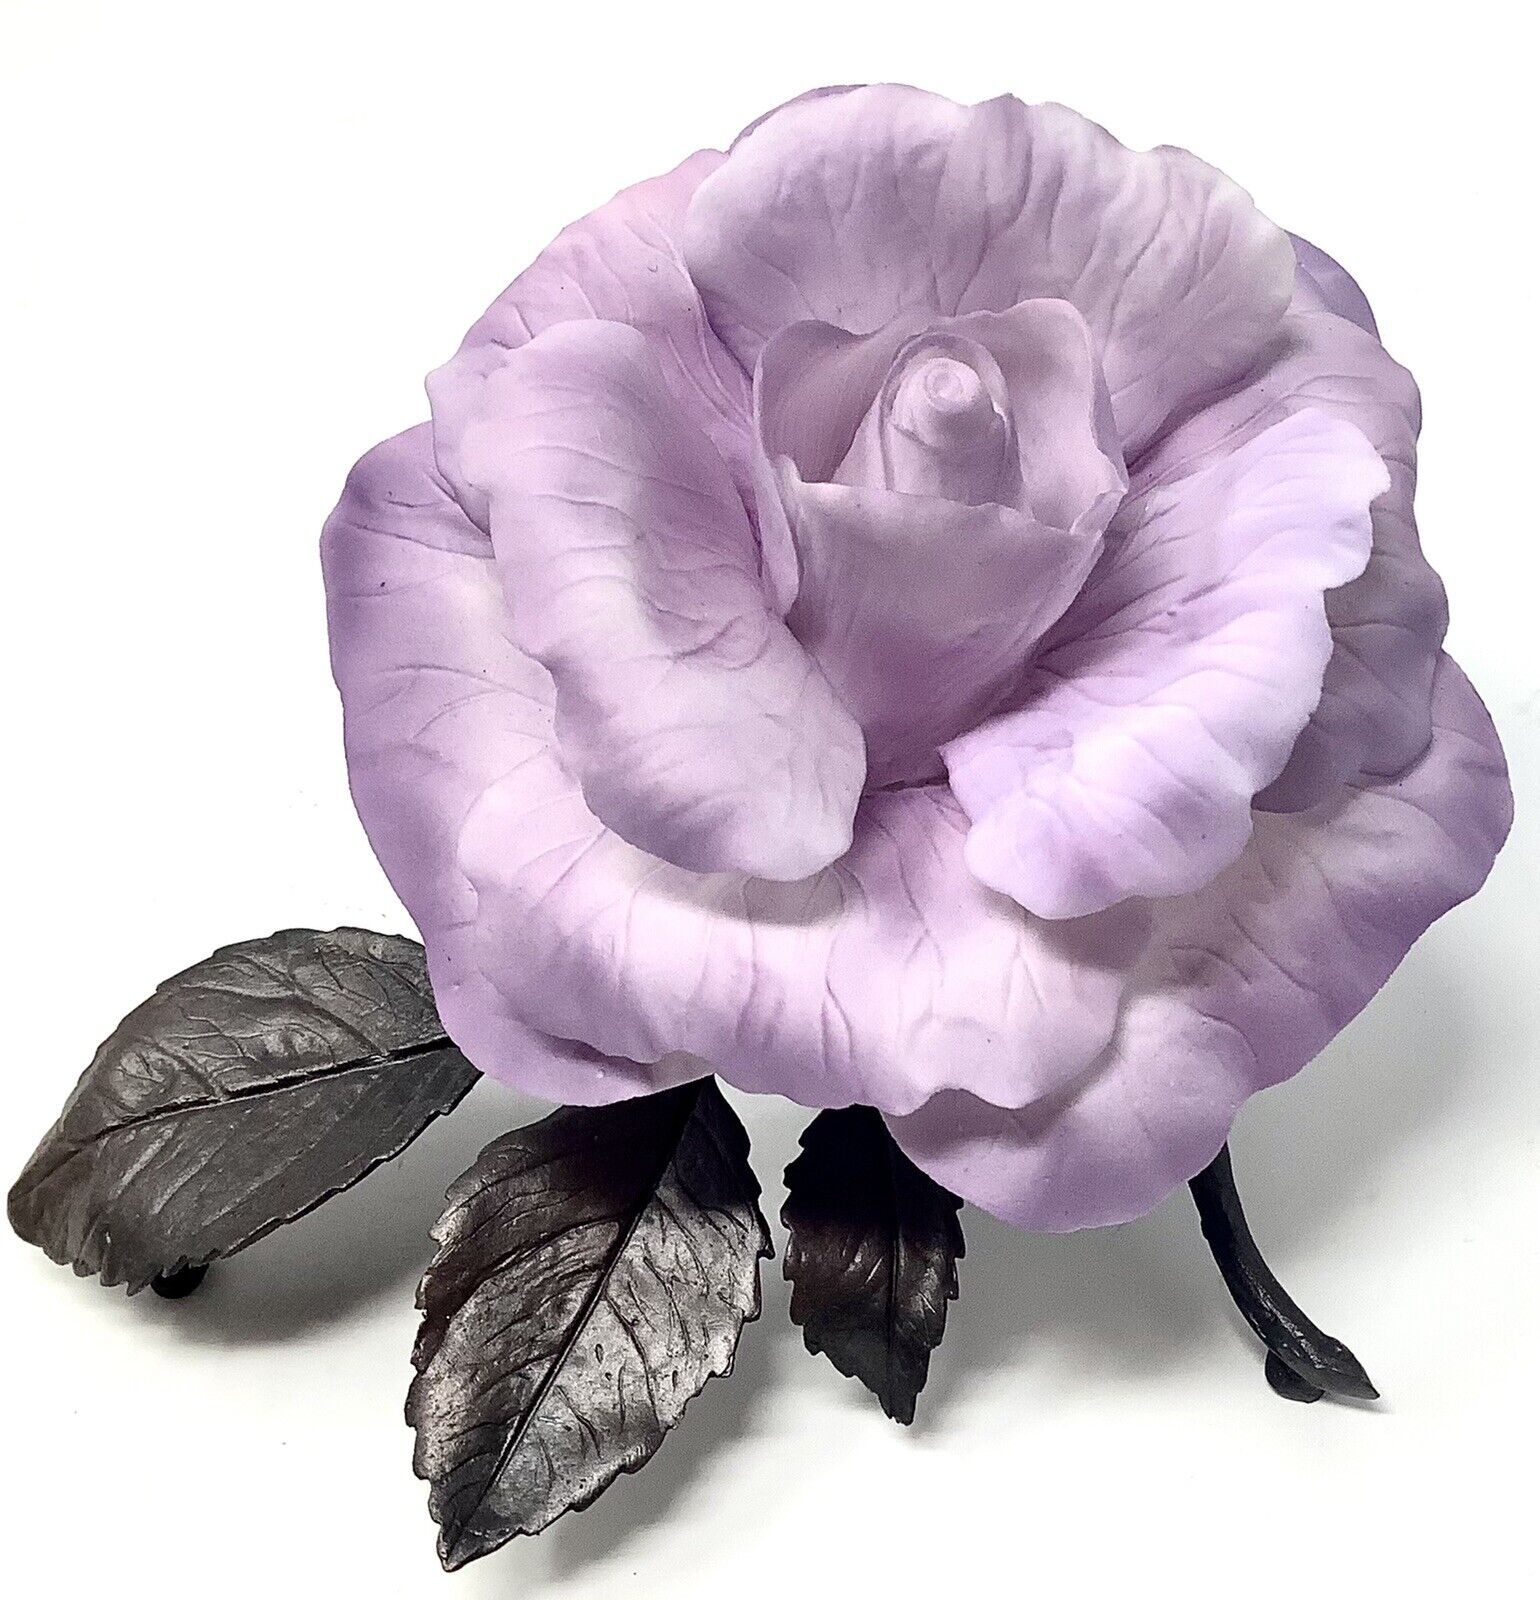 VTG Boehm Porcelain & Bronze “Angel Face” Rose Sculpture Limited Issue England